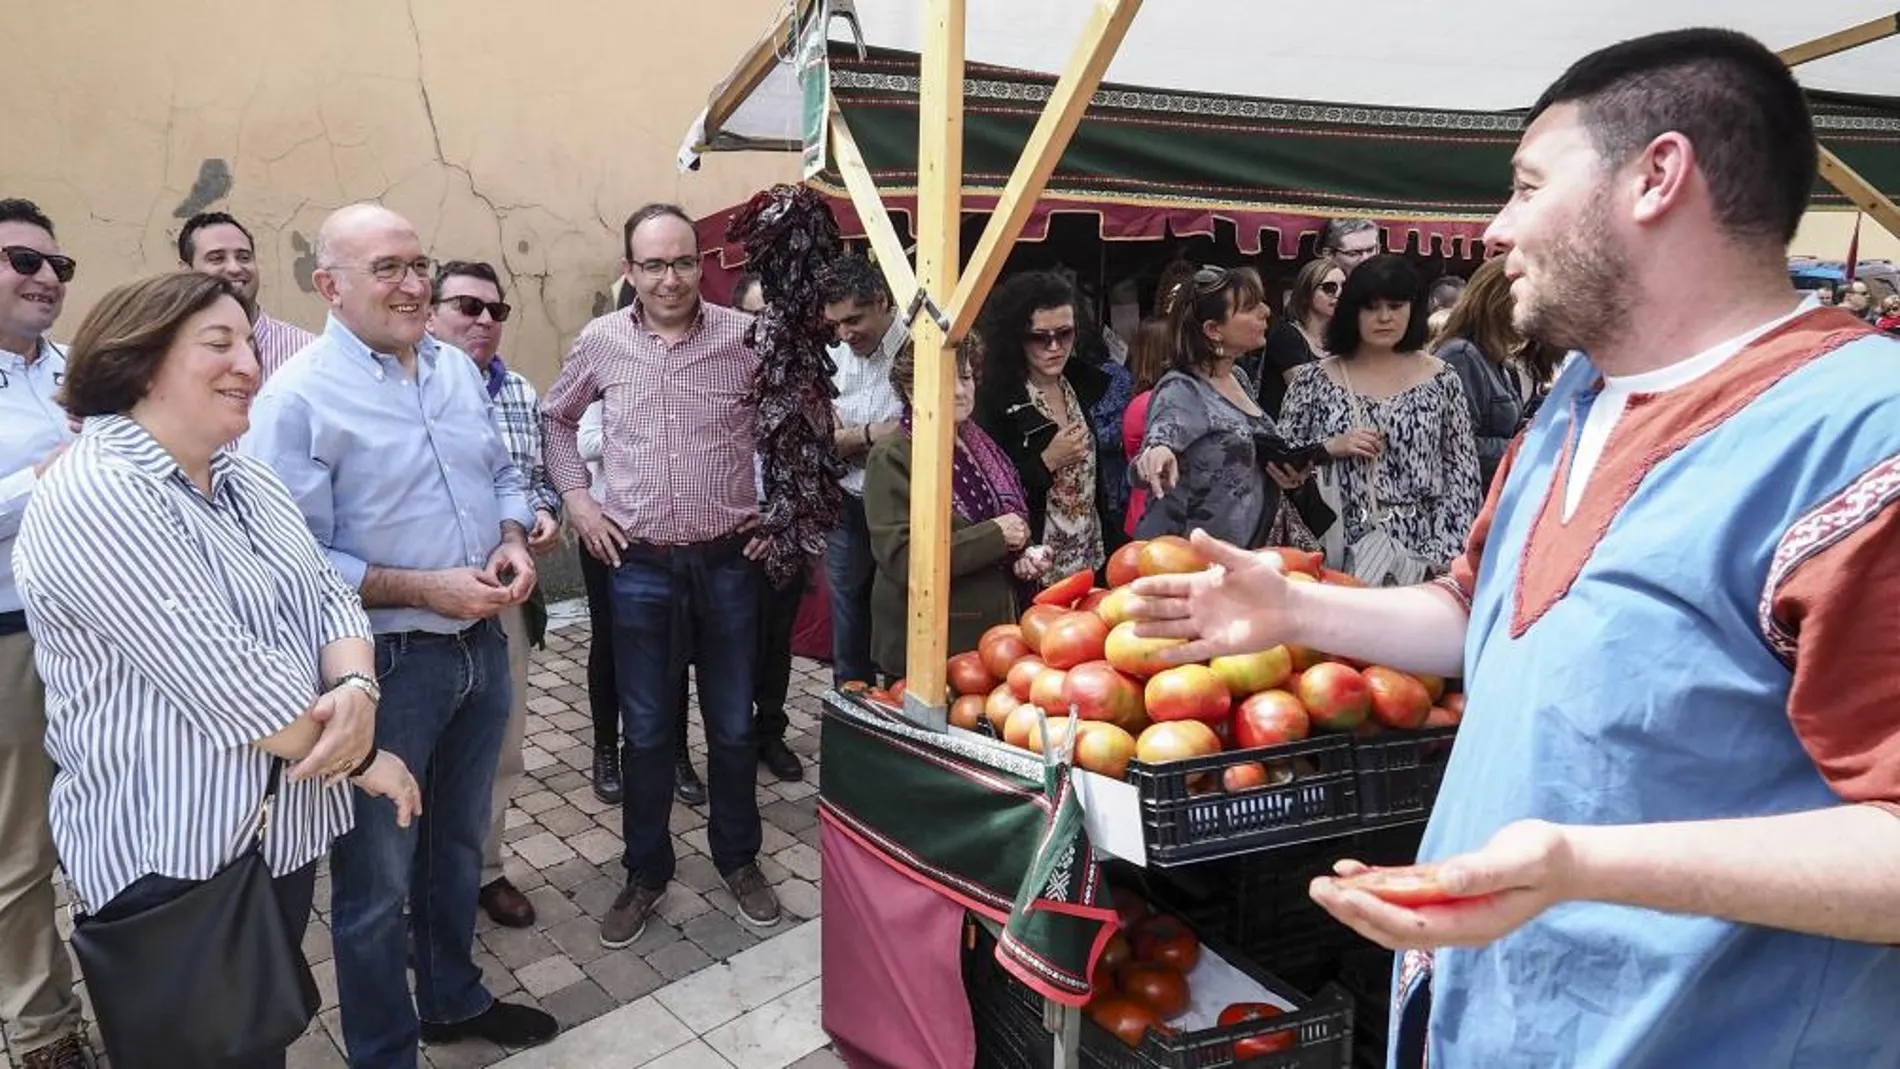 El presidente de la Diputación de Valladolid, Jesús Julio Carnero, visita el Mercado, acompañado de parte de su equipo de gobierno y de la alcaldesa Natividad Casares